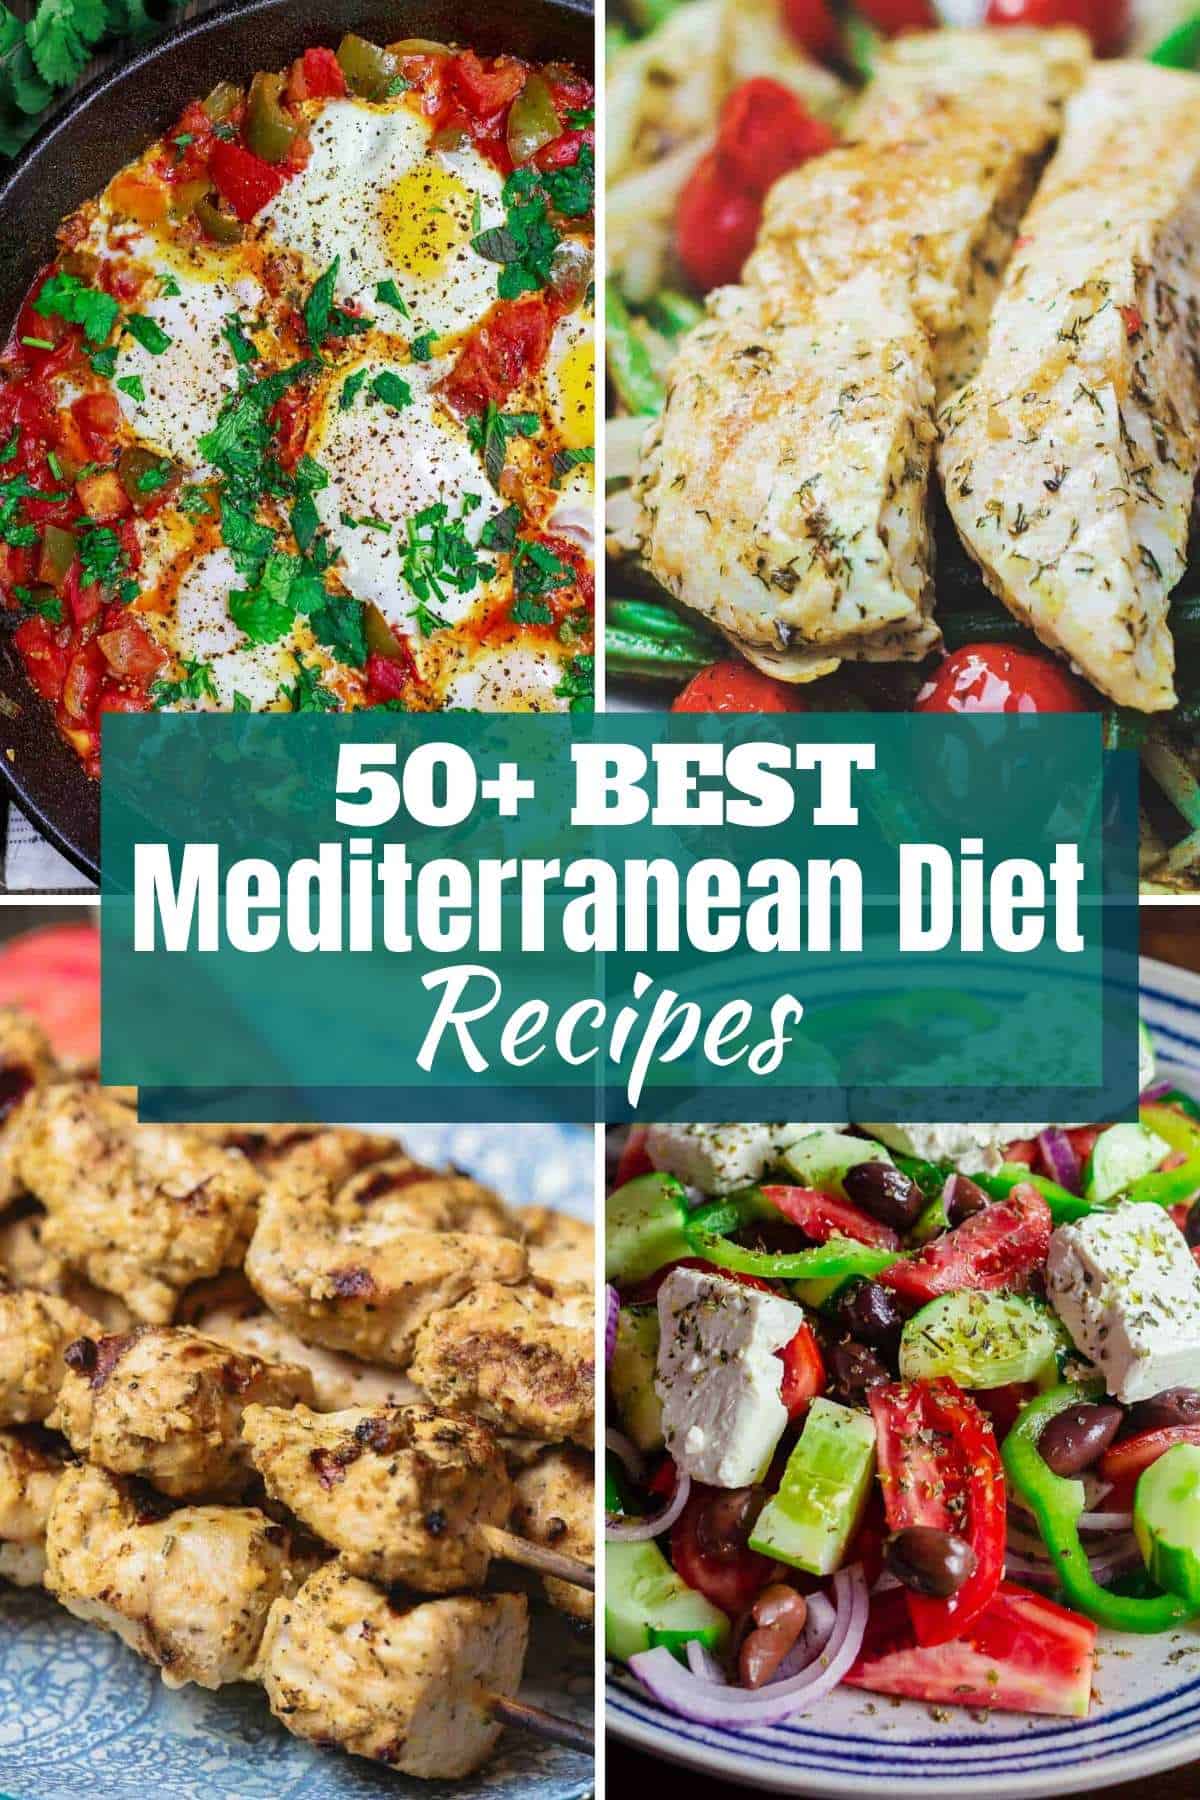 50+ Top Mediterranean Diet Recipes | The Mediterranean Dish